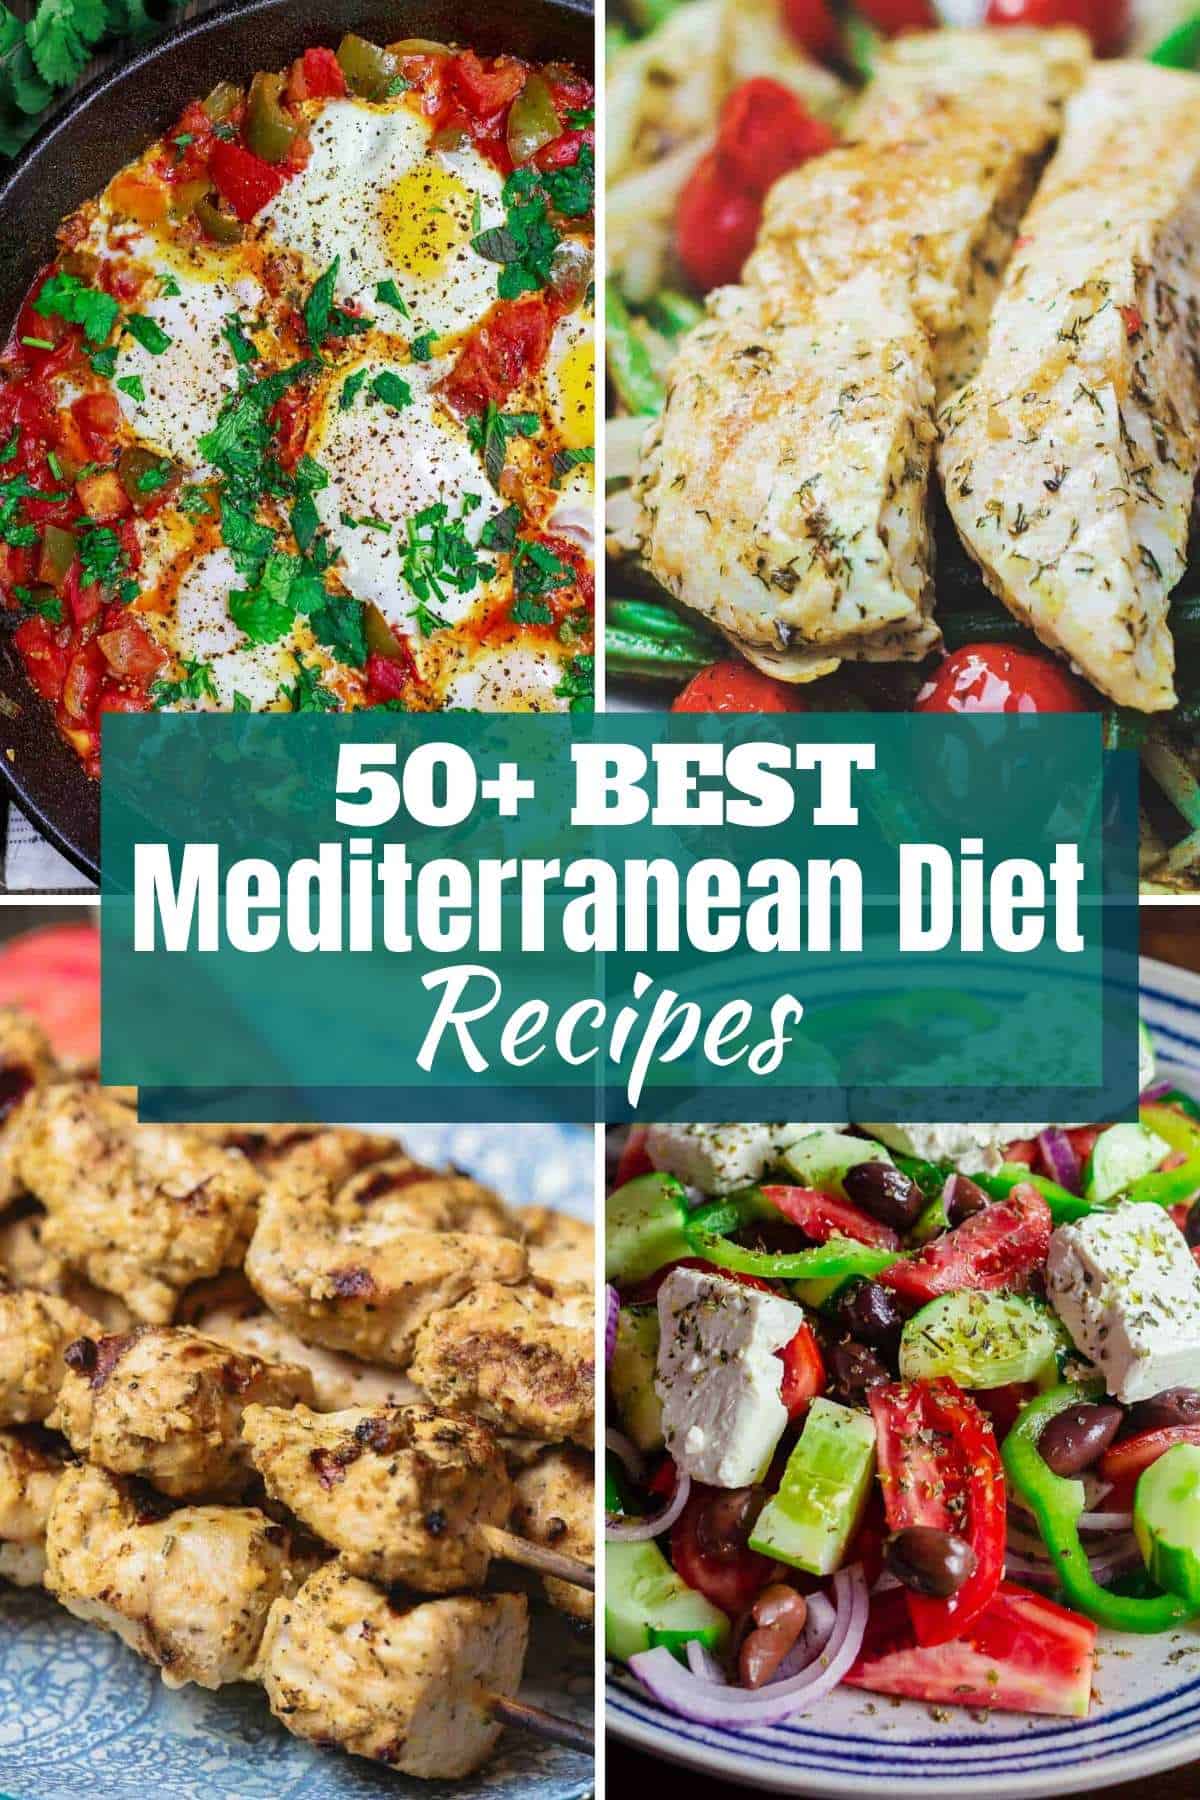 50+ Top Mediterranean Diet Recipes | The Mediterranean Dish